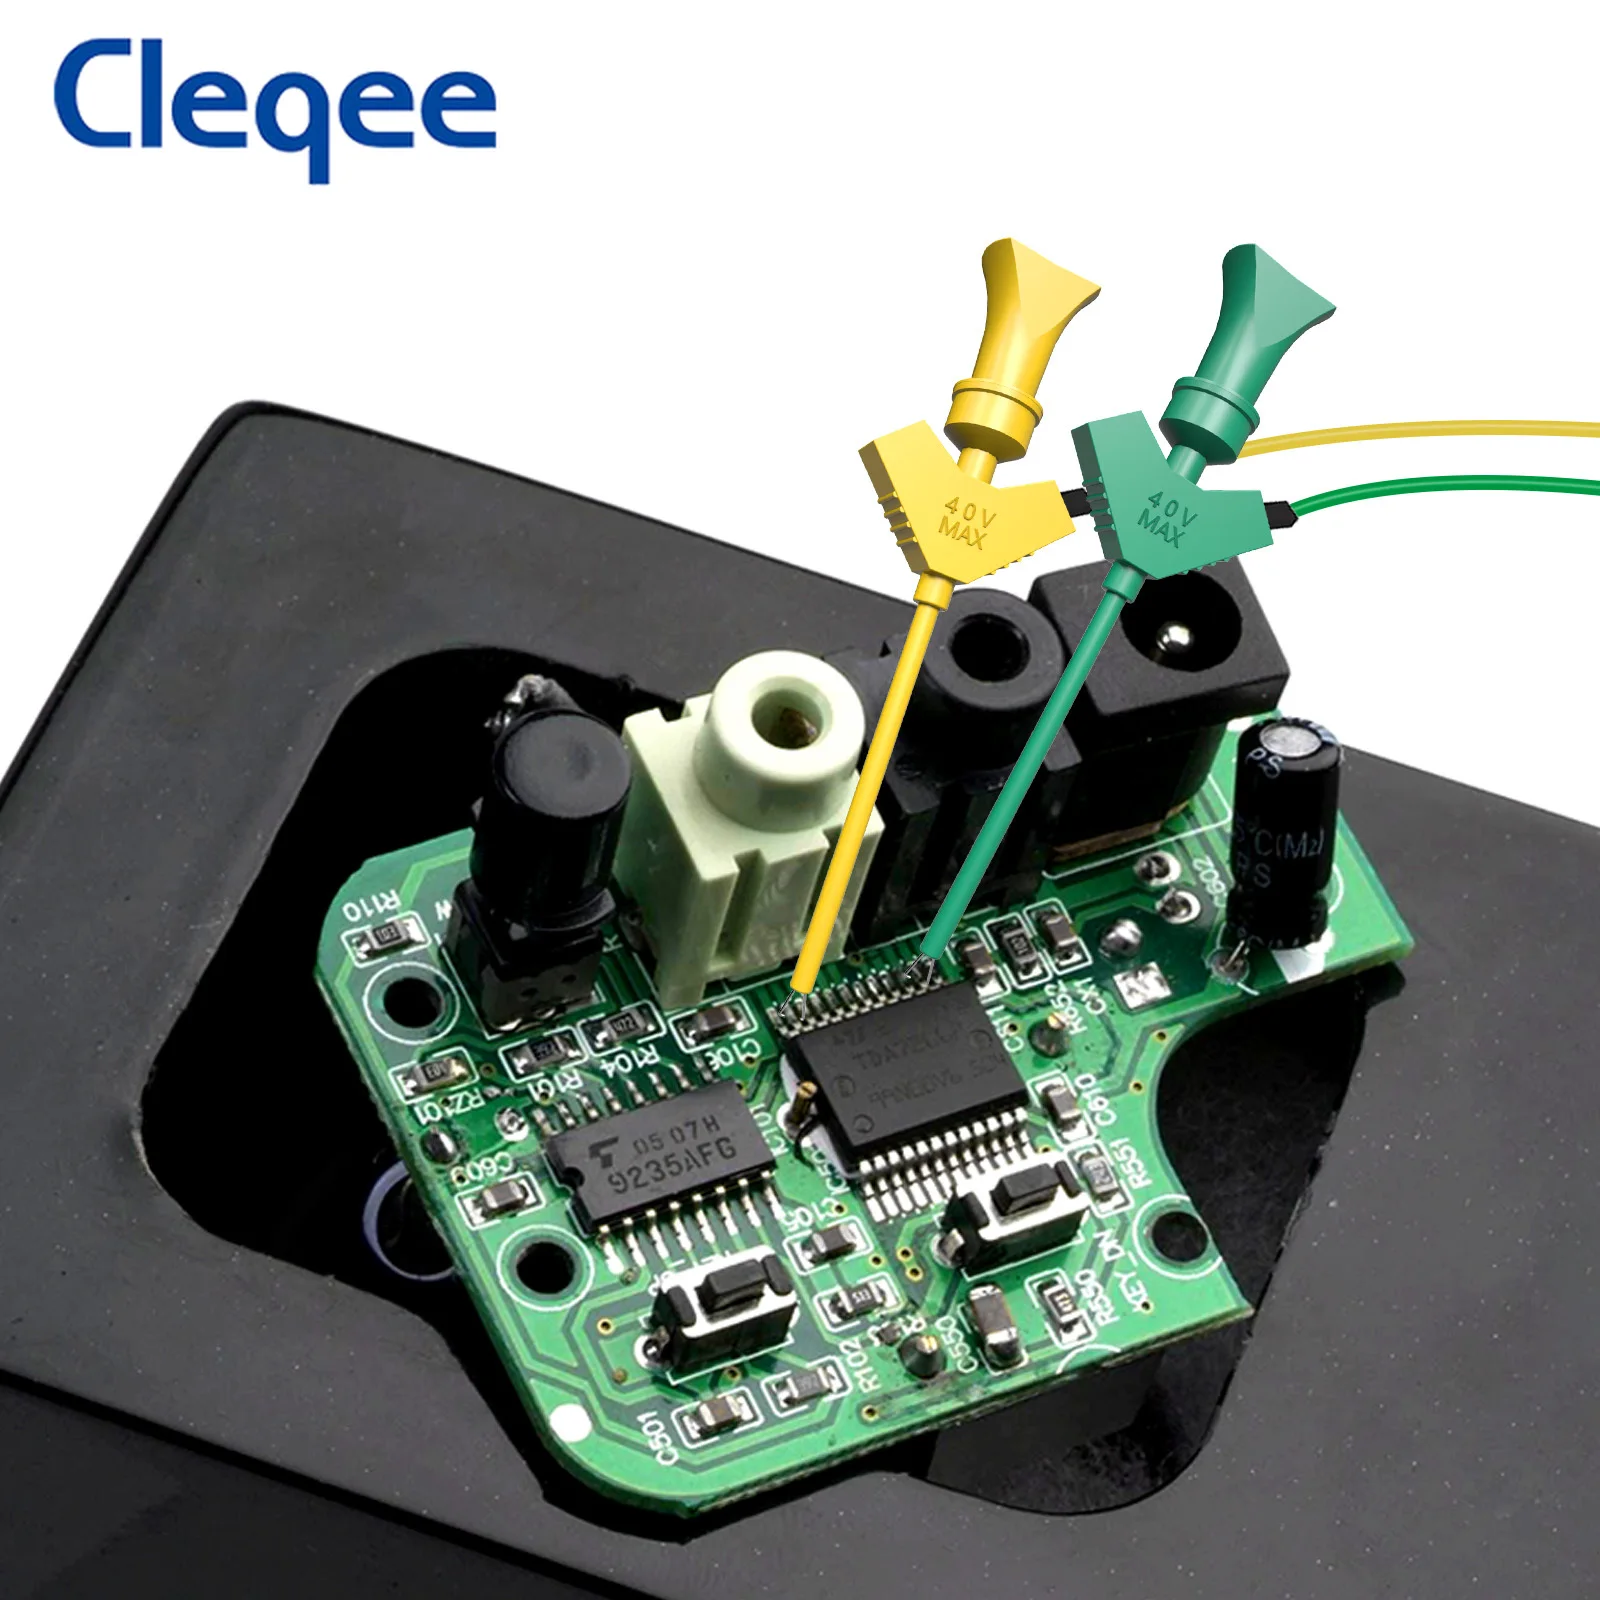 Cleqee P1512D mini chytač silikon skokan SMD IC krunýř hák klip krunýř dovést souprava dupont ženské pro logika analyzátor breadboard